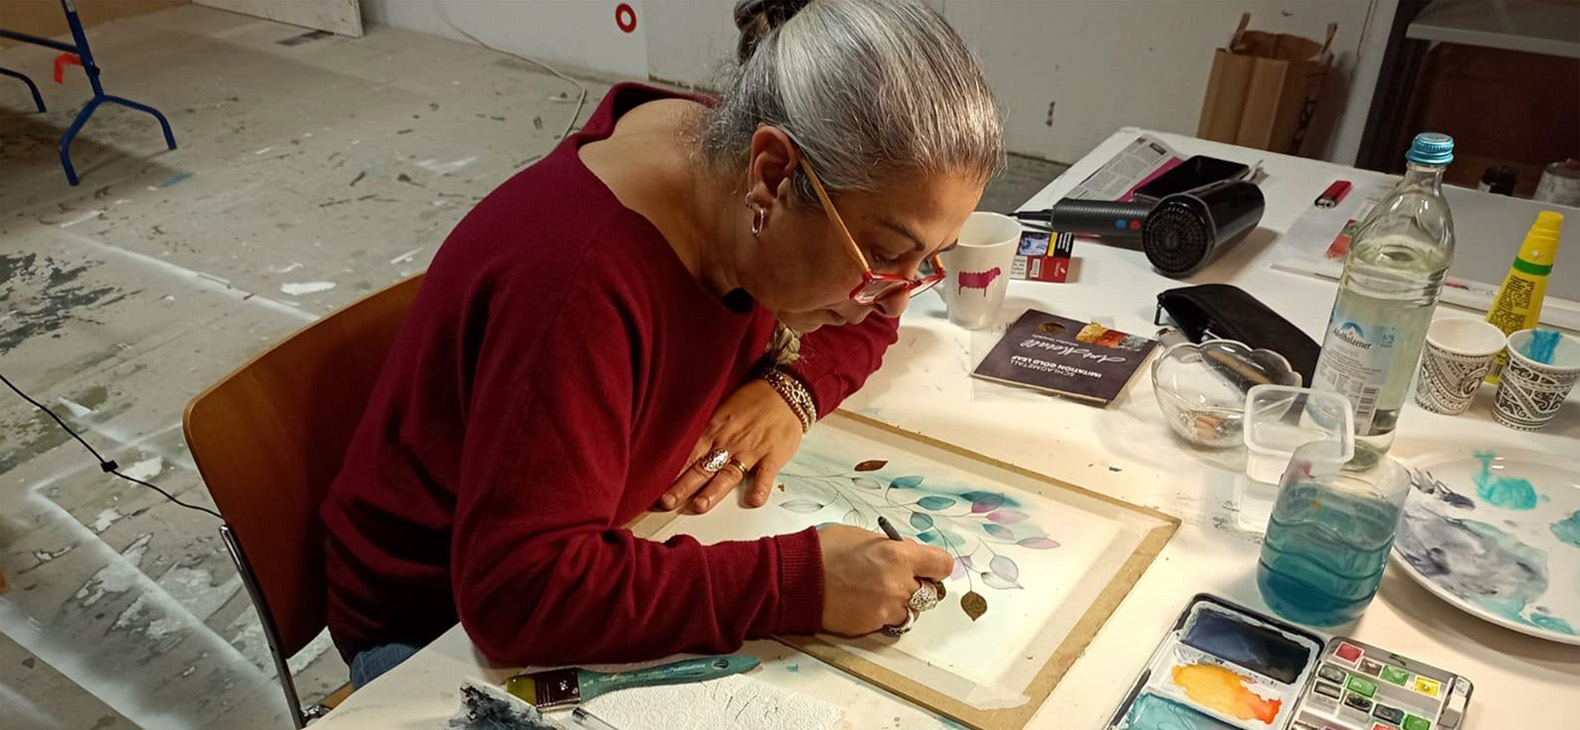 Residenzprogramm Schafhof; Künstlerinnen und Künstler 2022: Carmen Toscano. Die italienische Künstlerin Carmen Toscano ist bei der Arbeit an einem Aquarell-Gemälde zu sehen. Sie ist von schräg oben gebeugt über das Bild zu sehen.